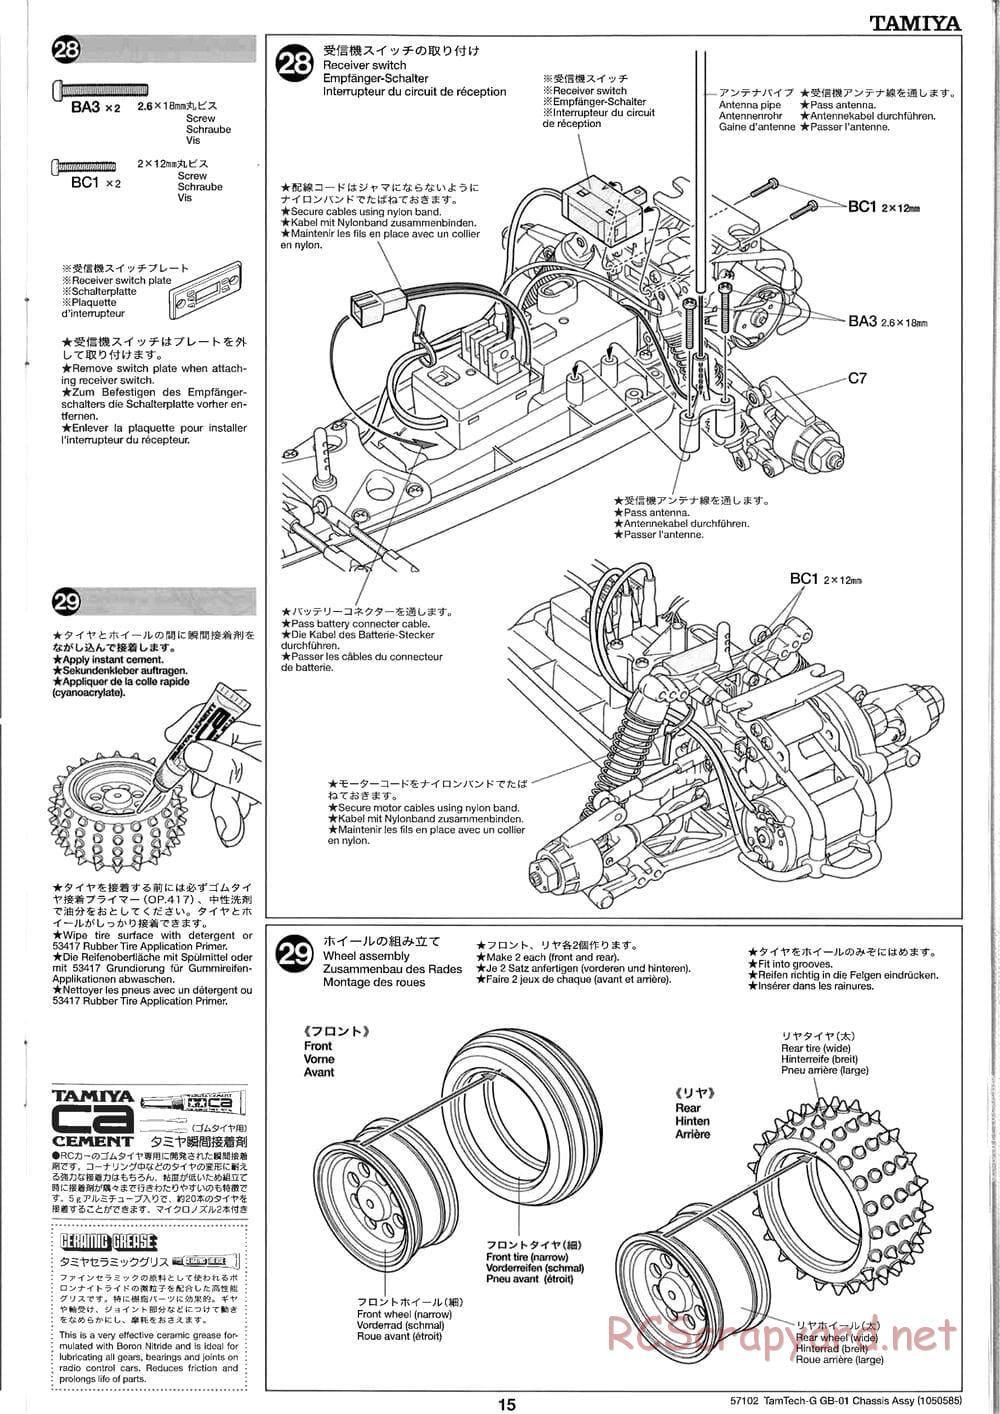 Tamiya - GB-01 Chassis - Manual - Page 15